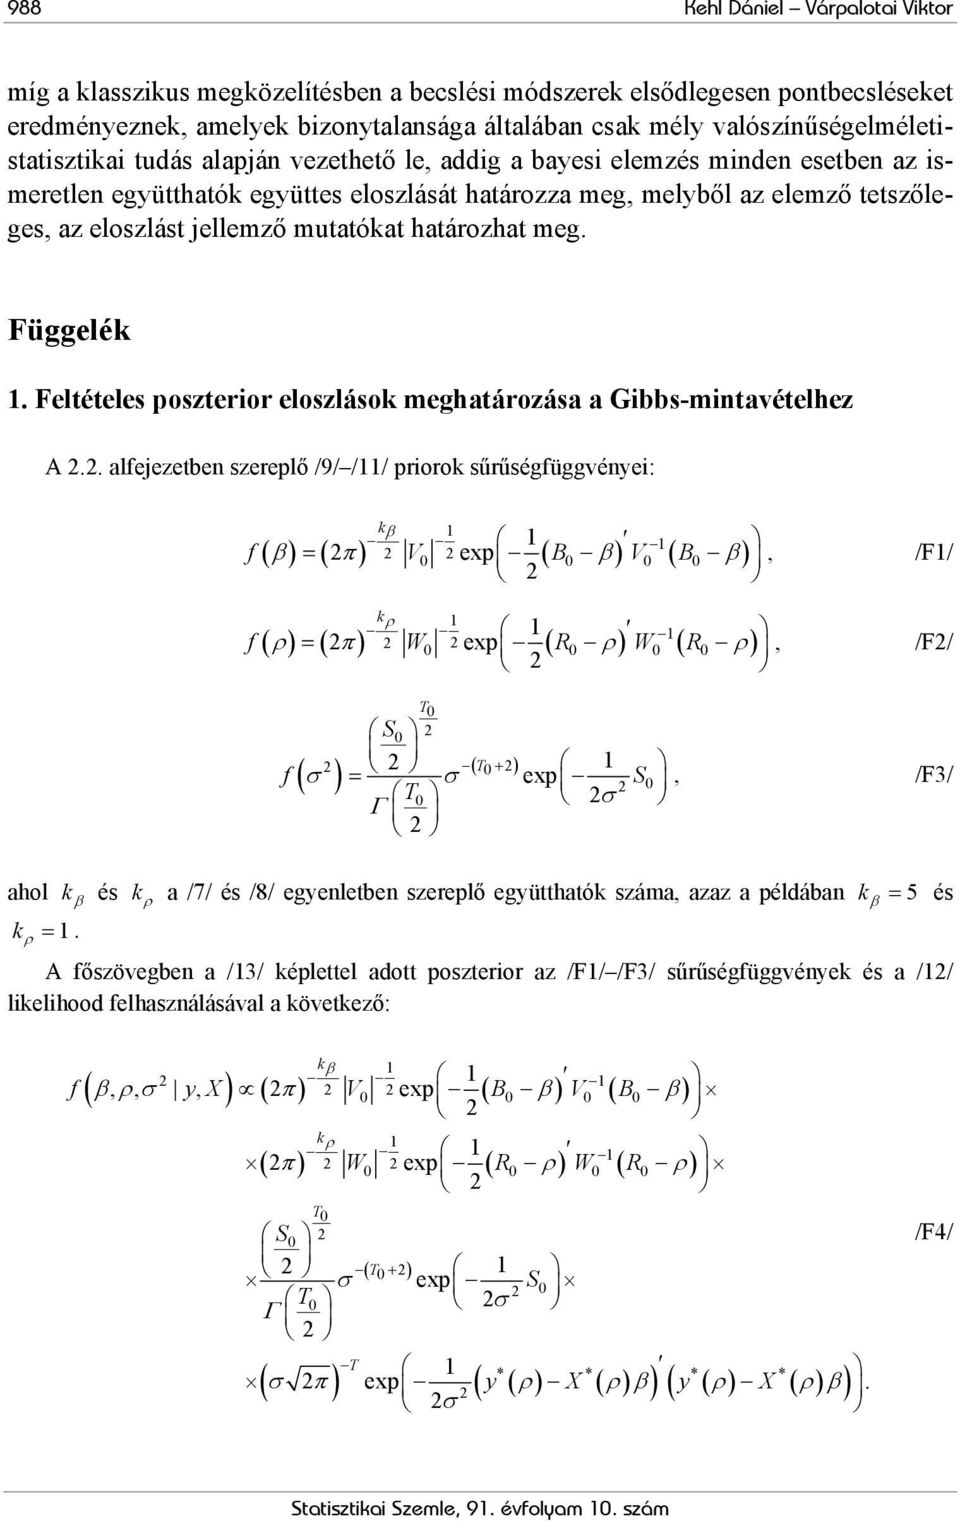 Feléeles poszerior eloszlások meghaározása a Gibbs-minavéelhez A.